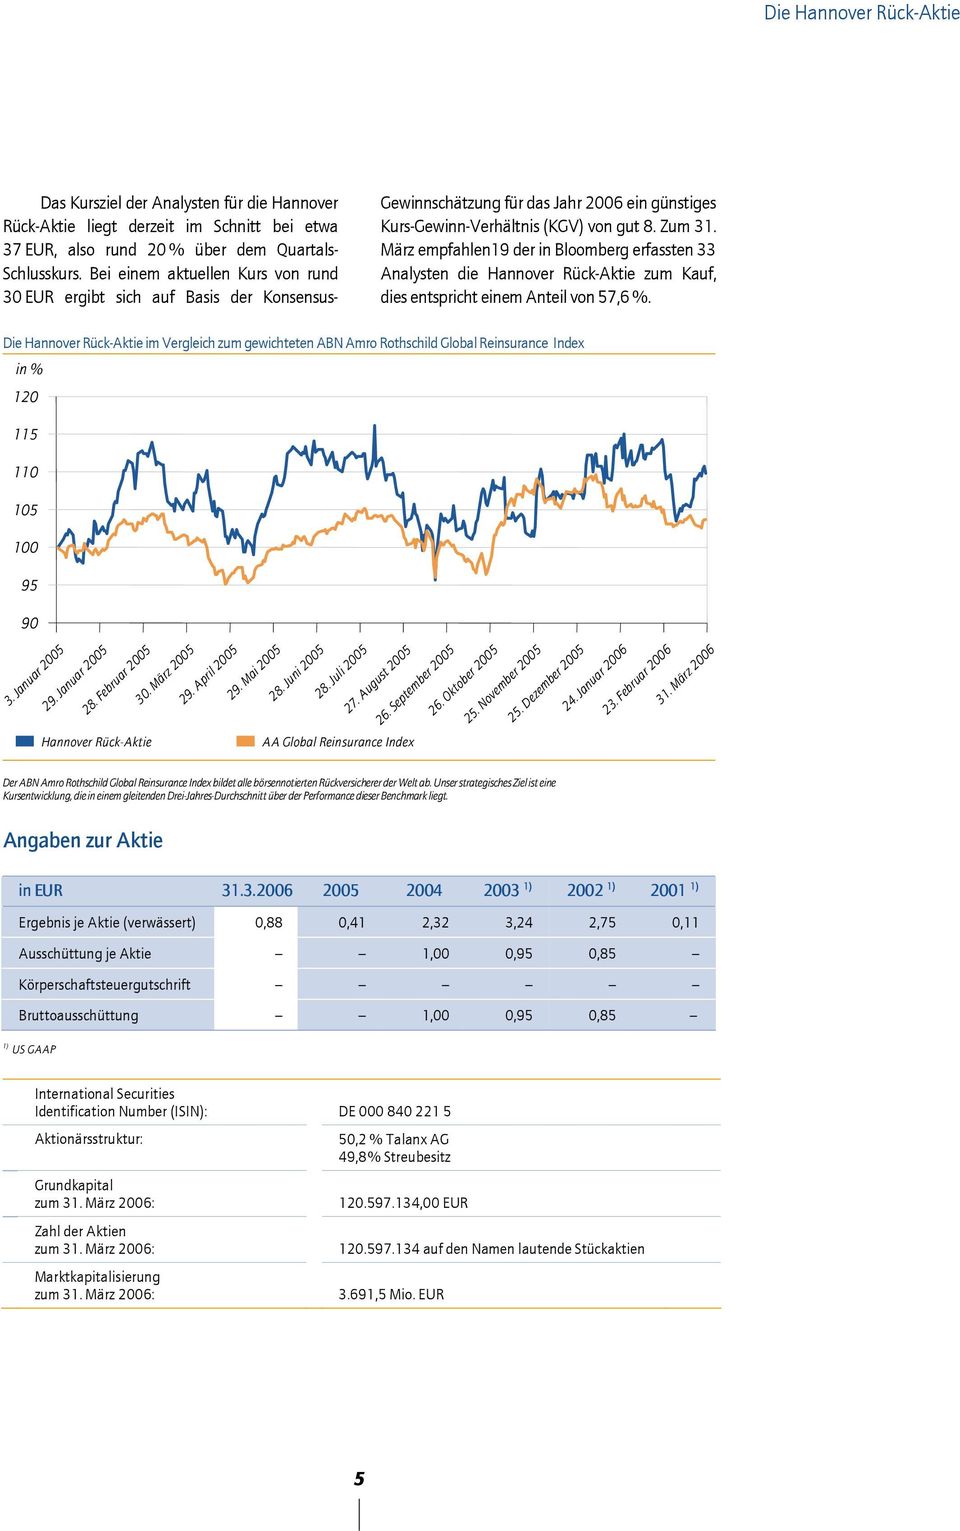 März empfahlen19 der in Bloomberg erfassten 33 Analysten die Hannover Rück-Aktie zum Kauf, dies entspricht einem Anteil von 57,6 %.